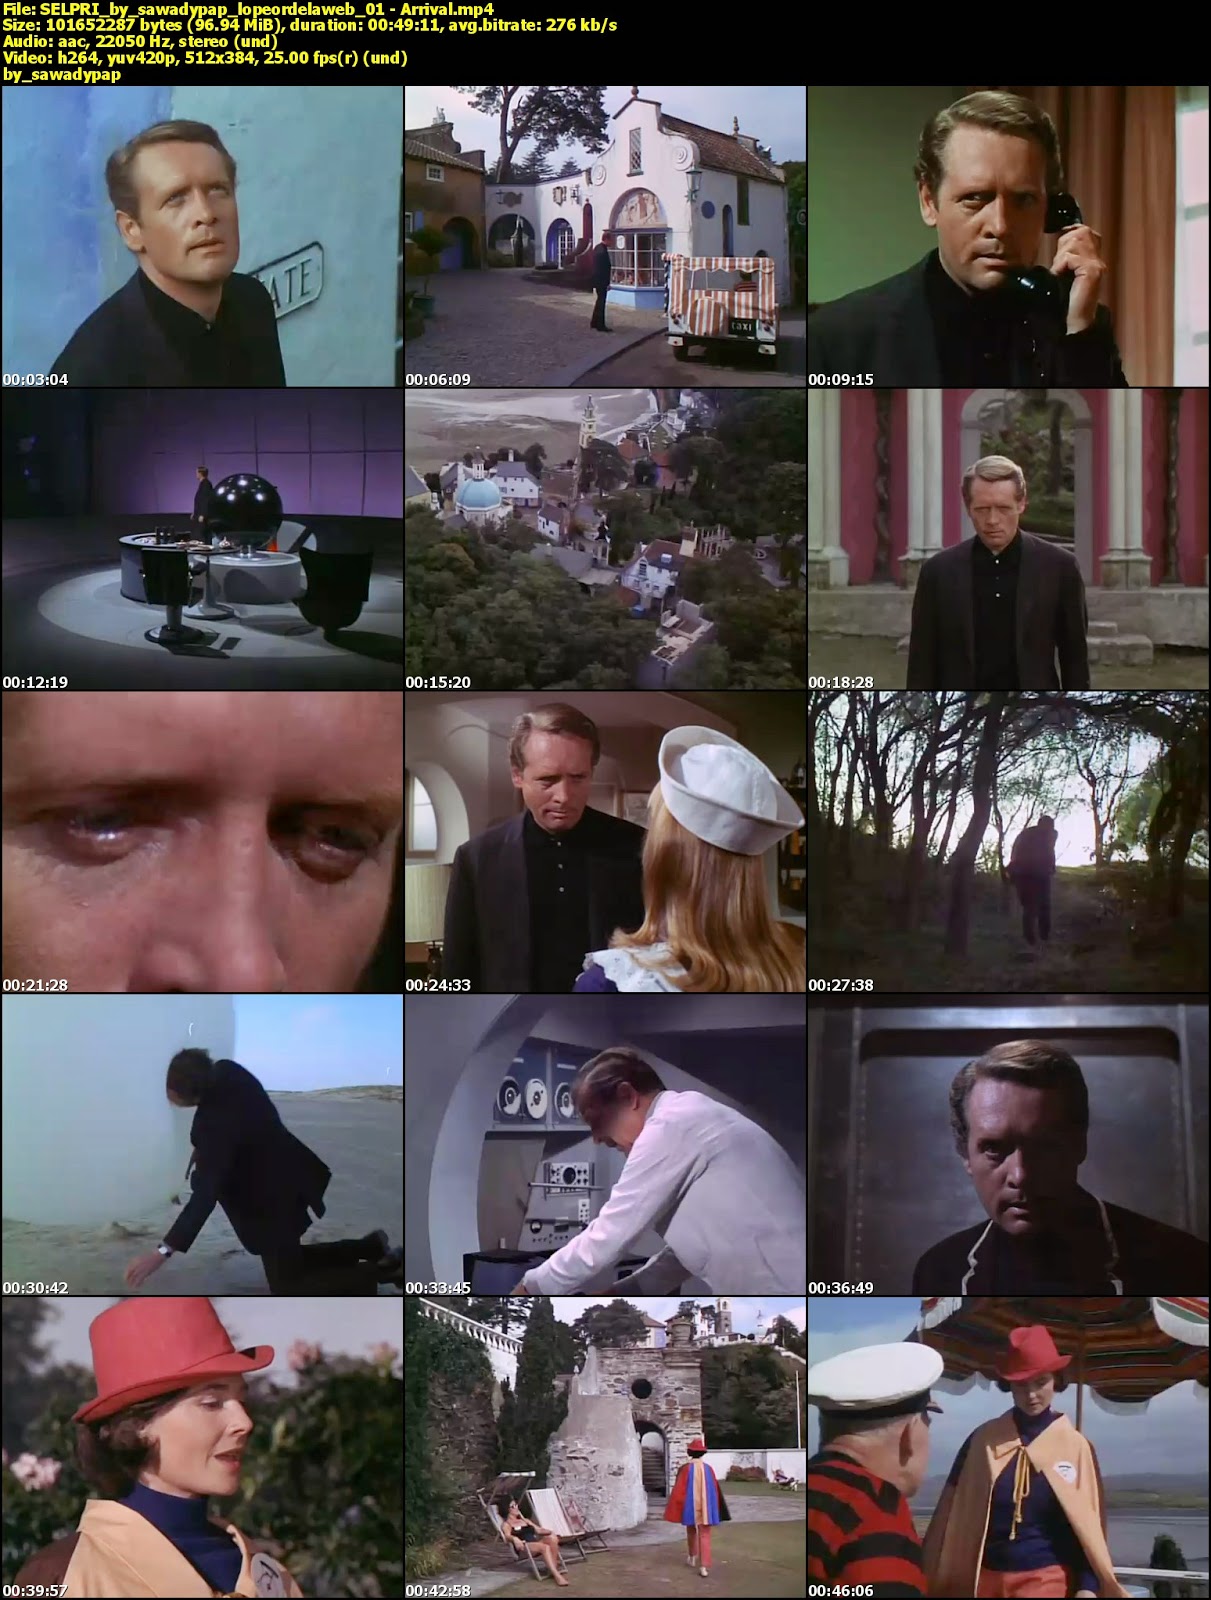 The Prisoner (TV Series) [1967] [DVDRip] [Latino]